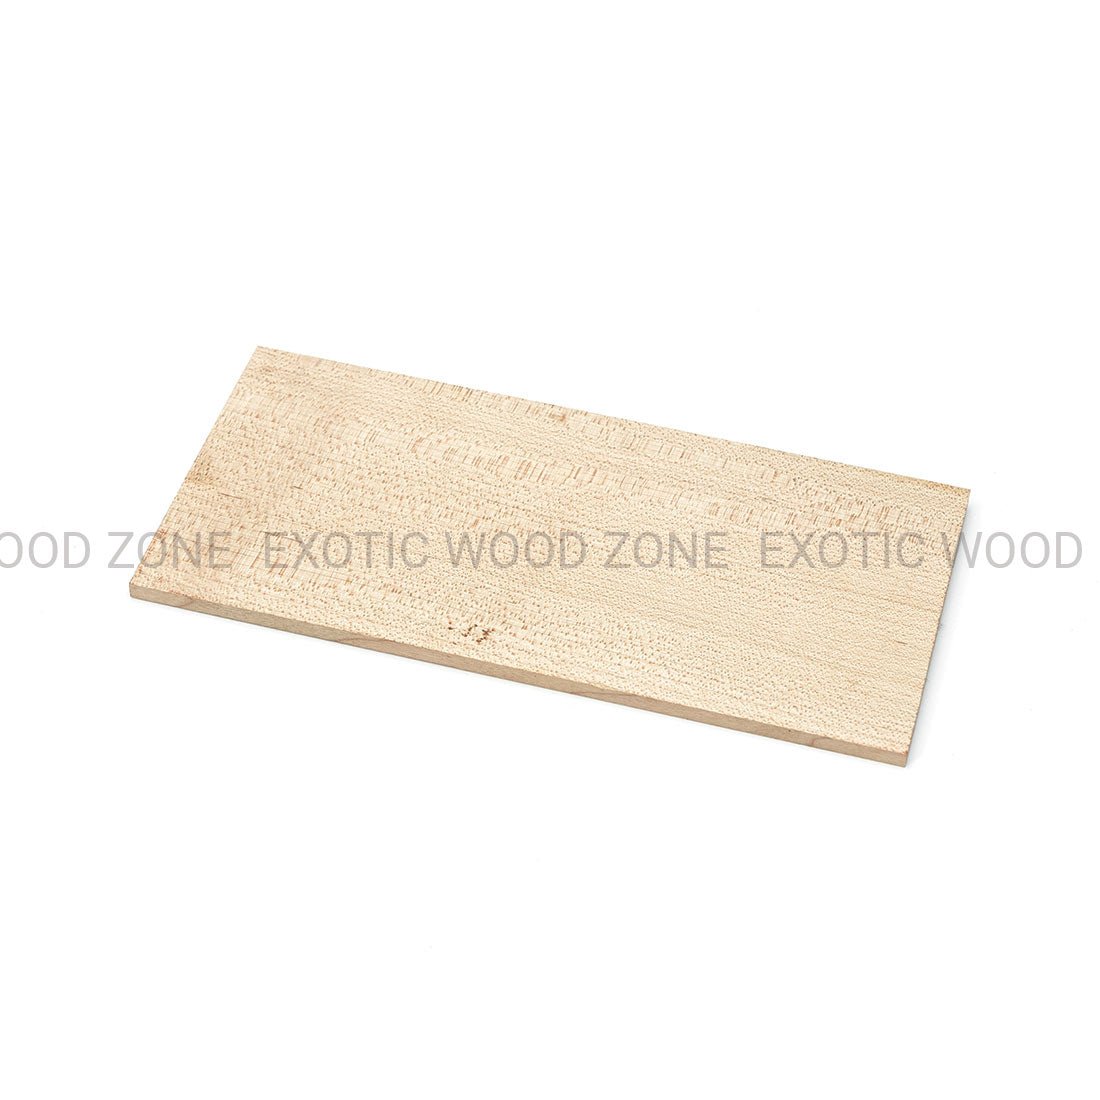 Hard Maple Flat Sawn Headplate Wood Blank